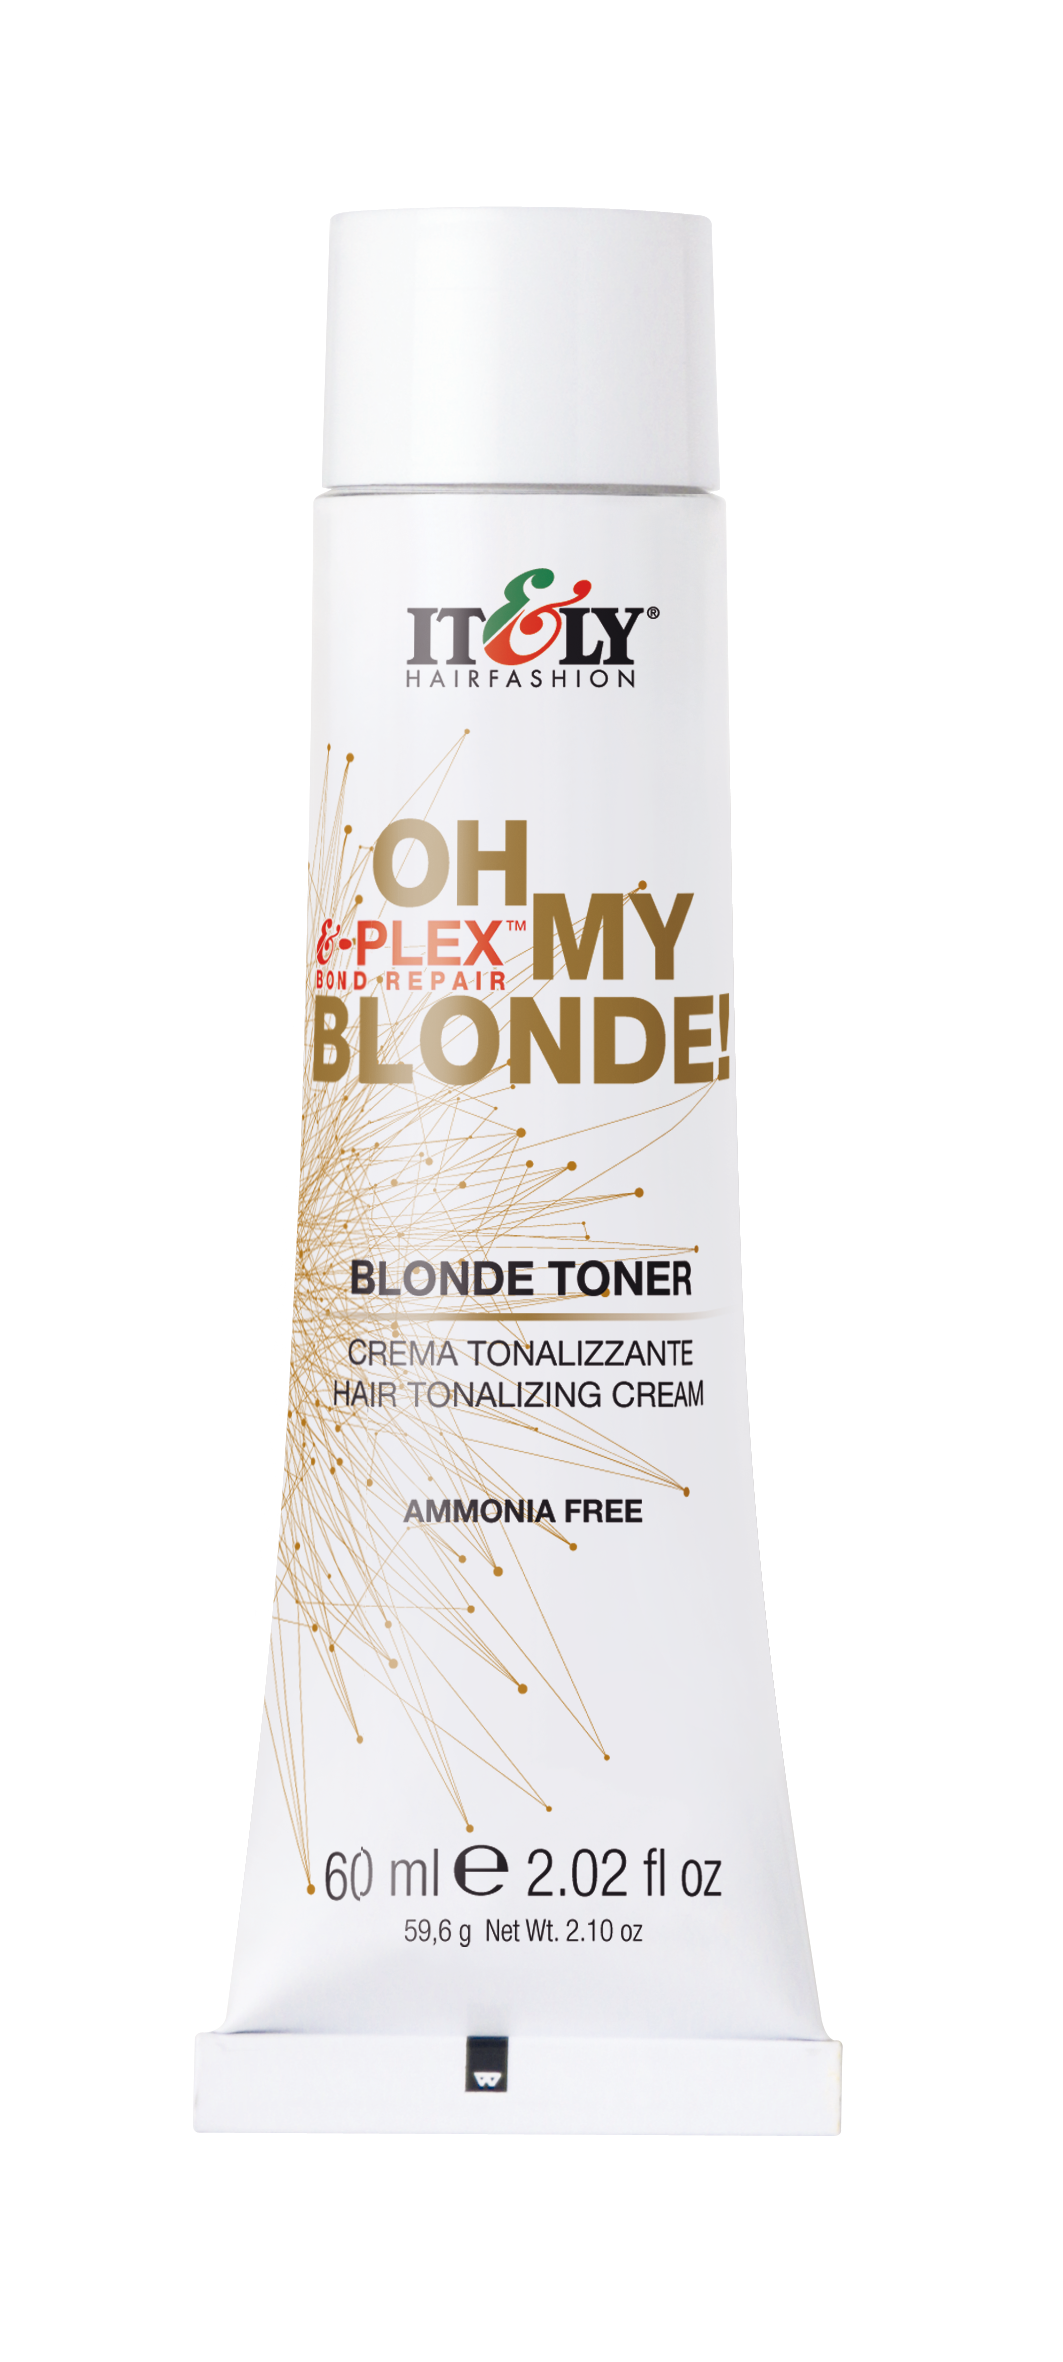 Blonde Toner